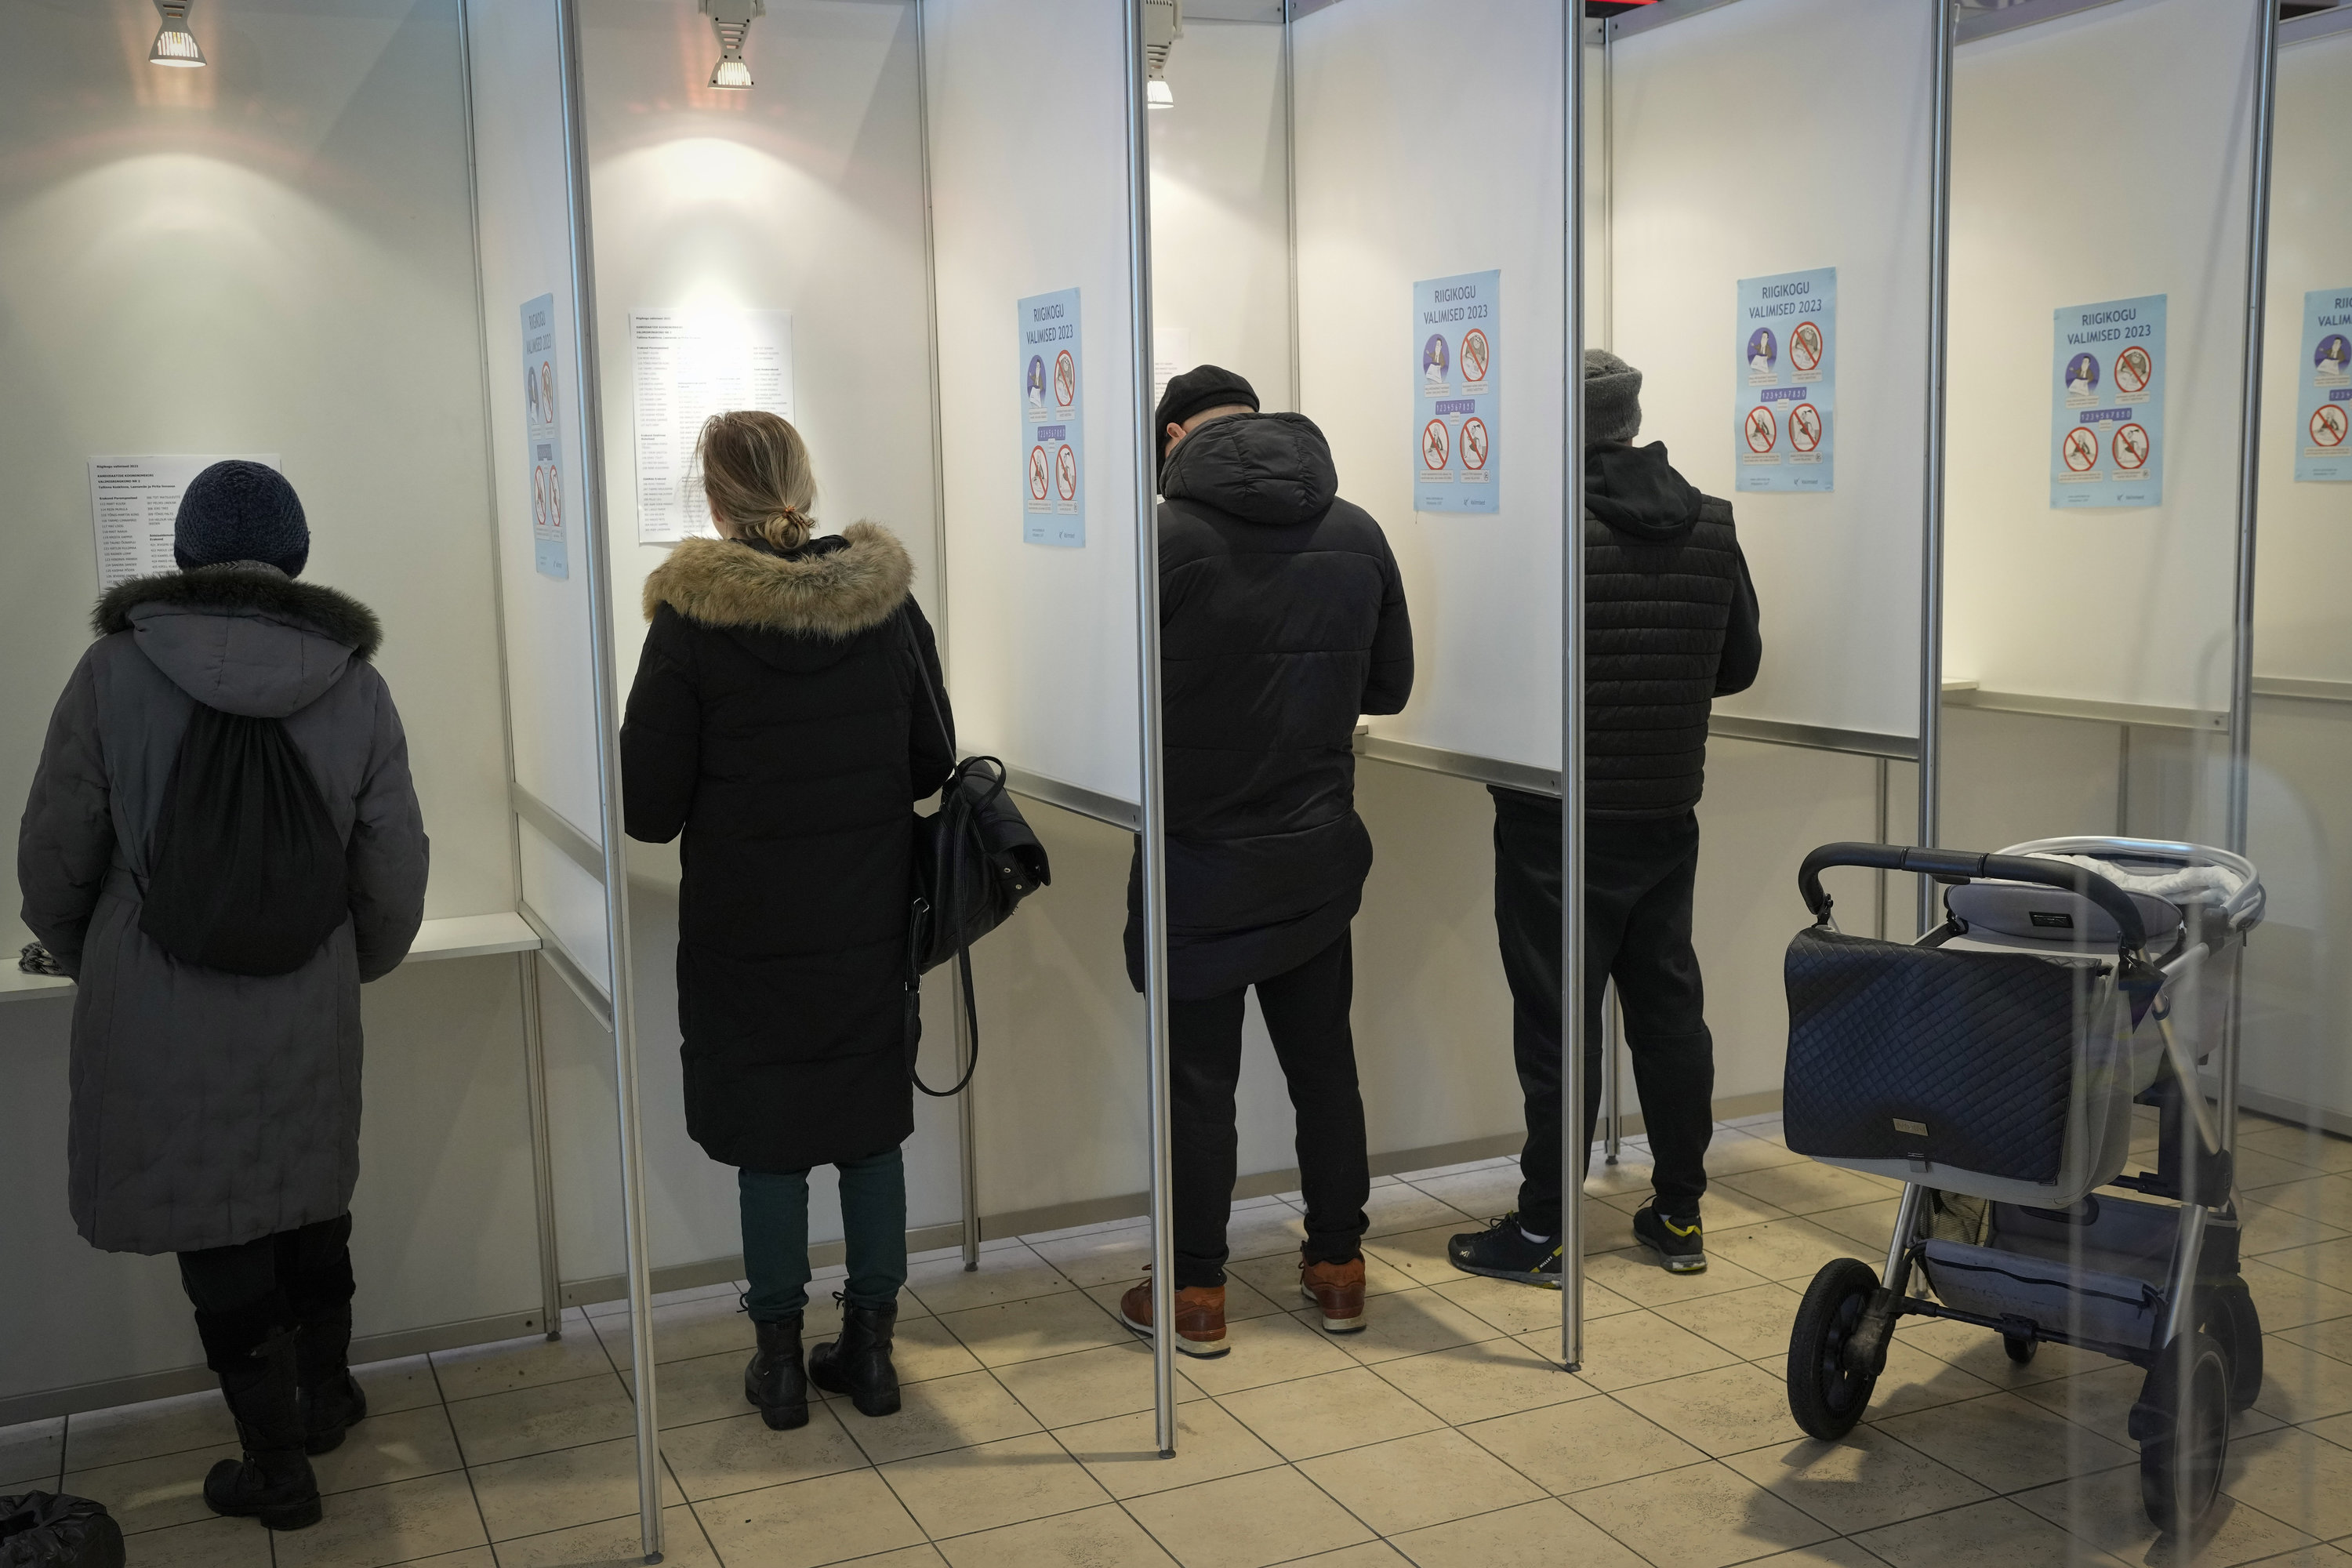 Vier Menschen, getrennt durch Zwischenwände, beim Abstimmen in einem Wahllokal in Tallinn, rechts am Rand parkt ein Kinderwagen | AP